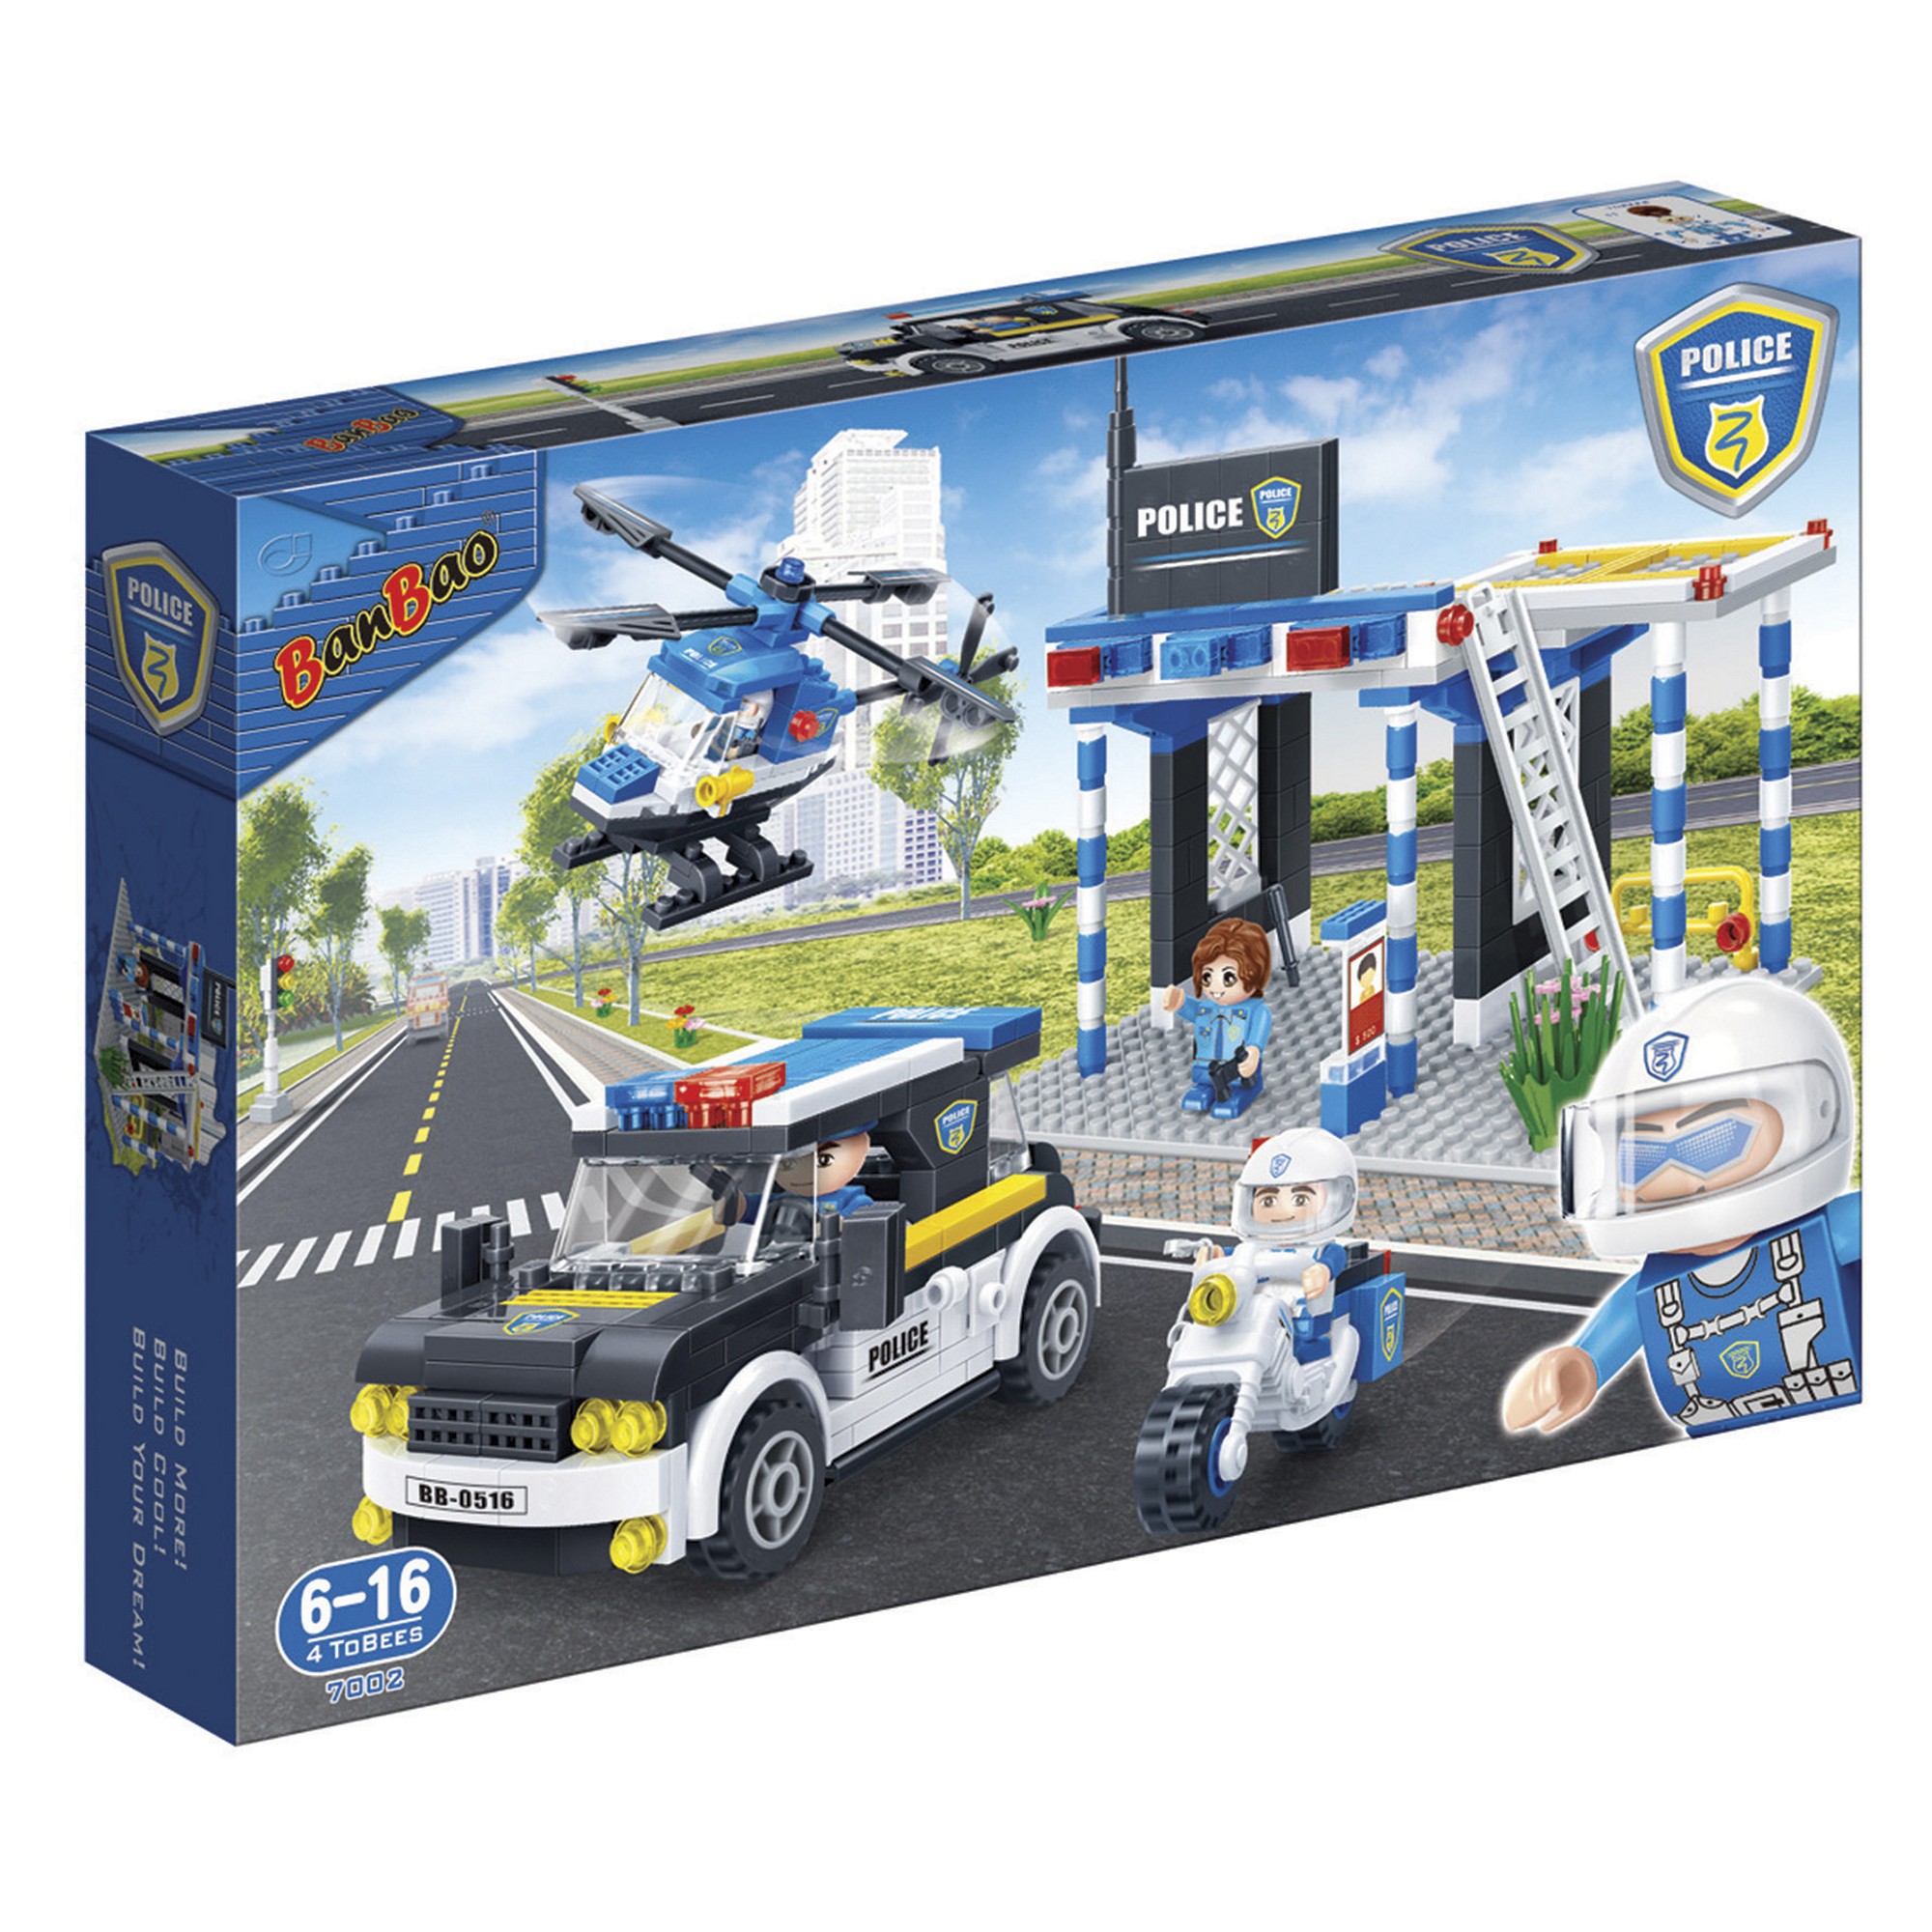 Kinder Geschenk Konstruktions Spielzeug Bausteine Baukästen Rennwagen Politie Banbao 7002 Blast